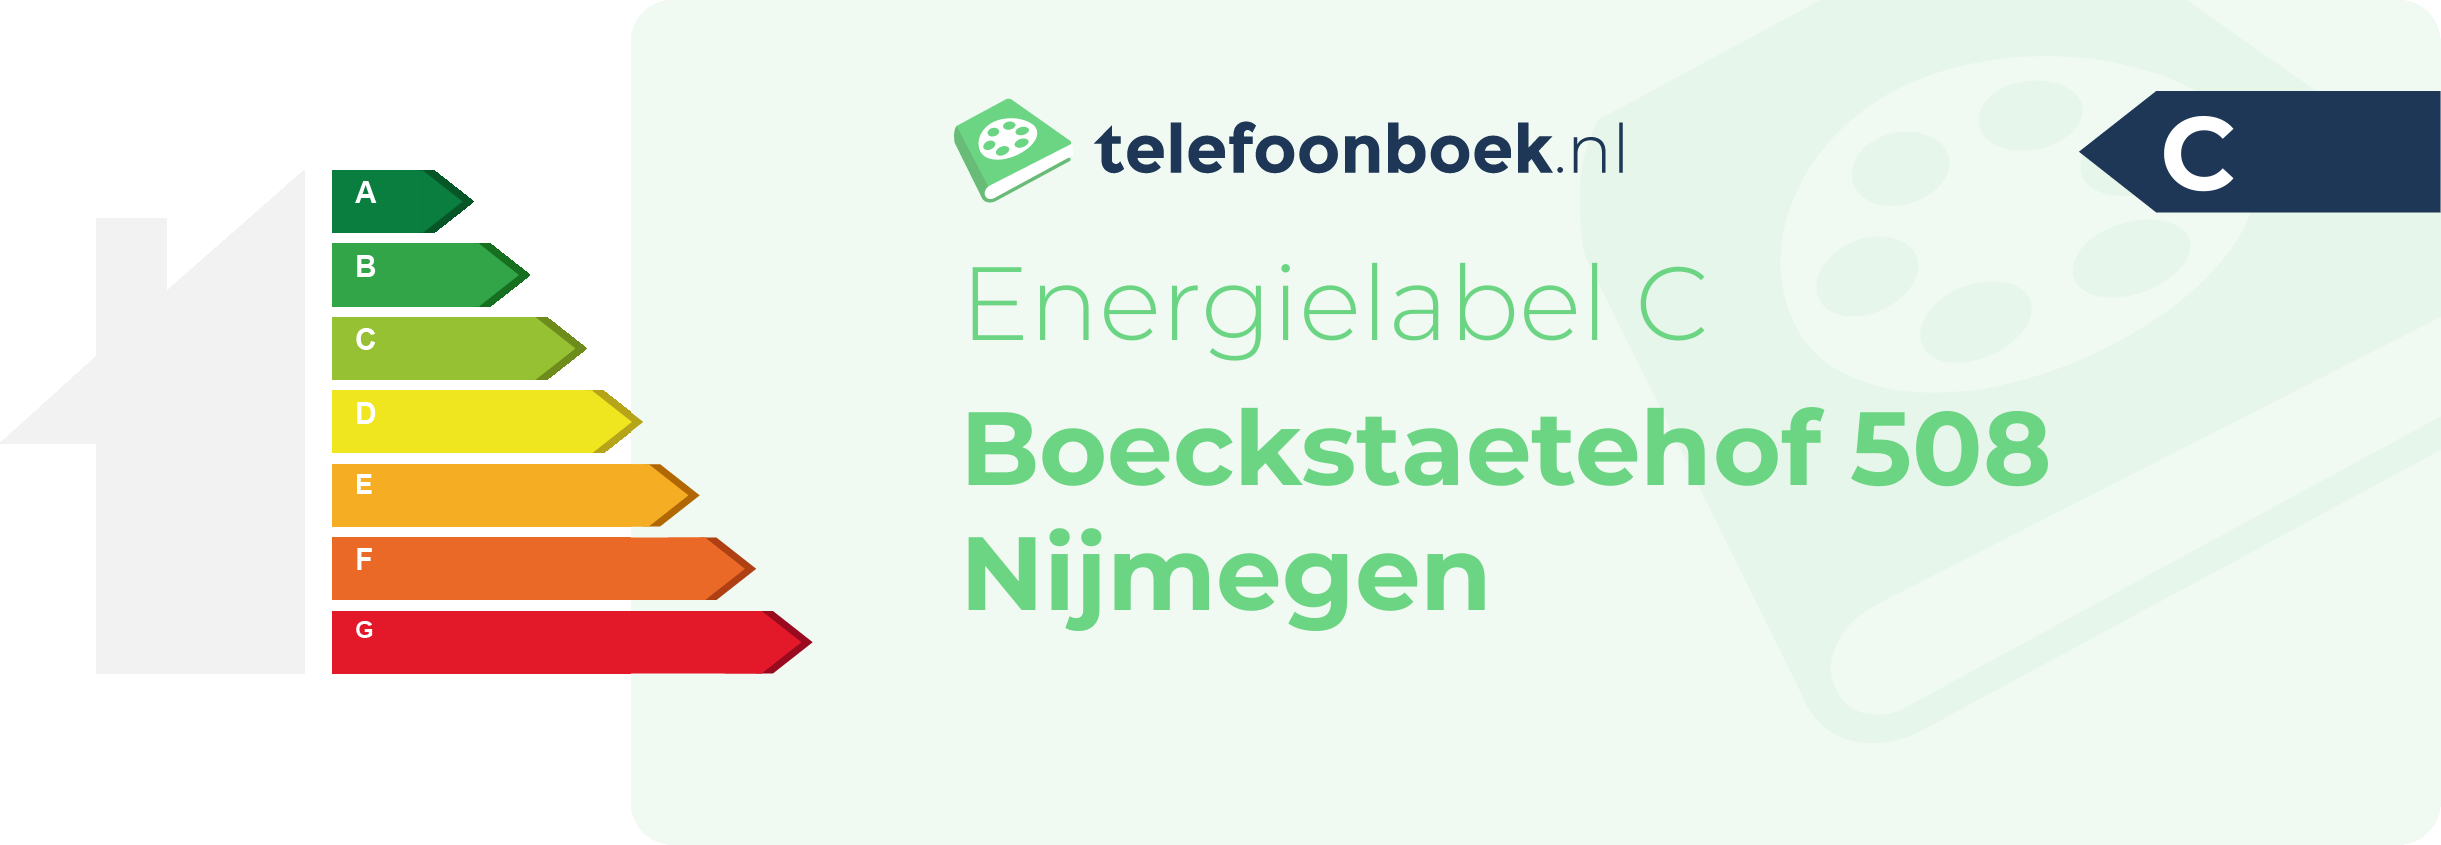 Energielabel Boeckstaetehof 508 Nijmegen